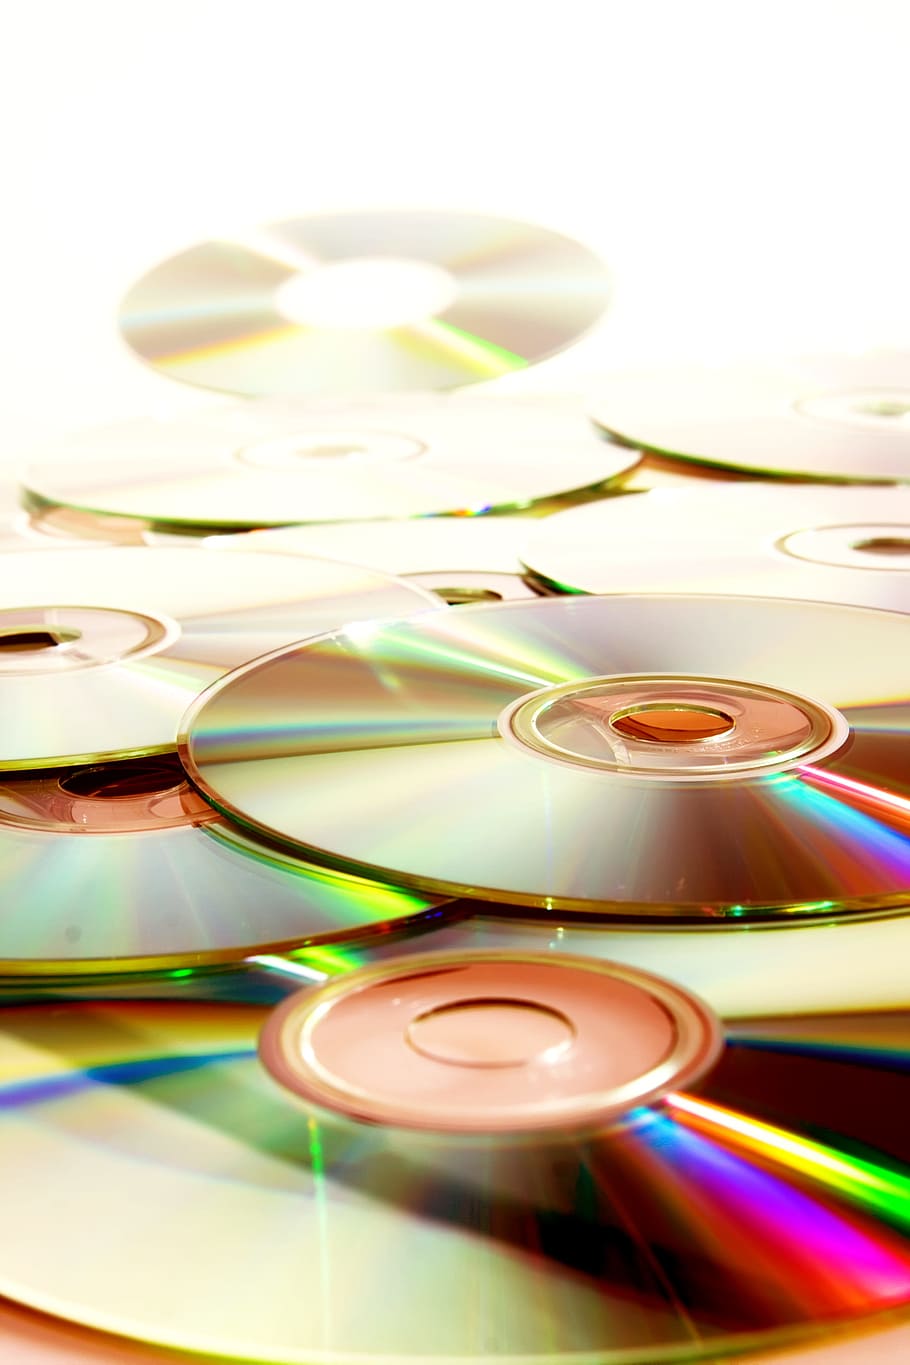 cd, cd-rom, cover, data, digital, disk, dvd, empty, film, games